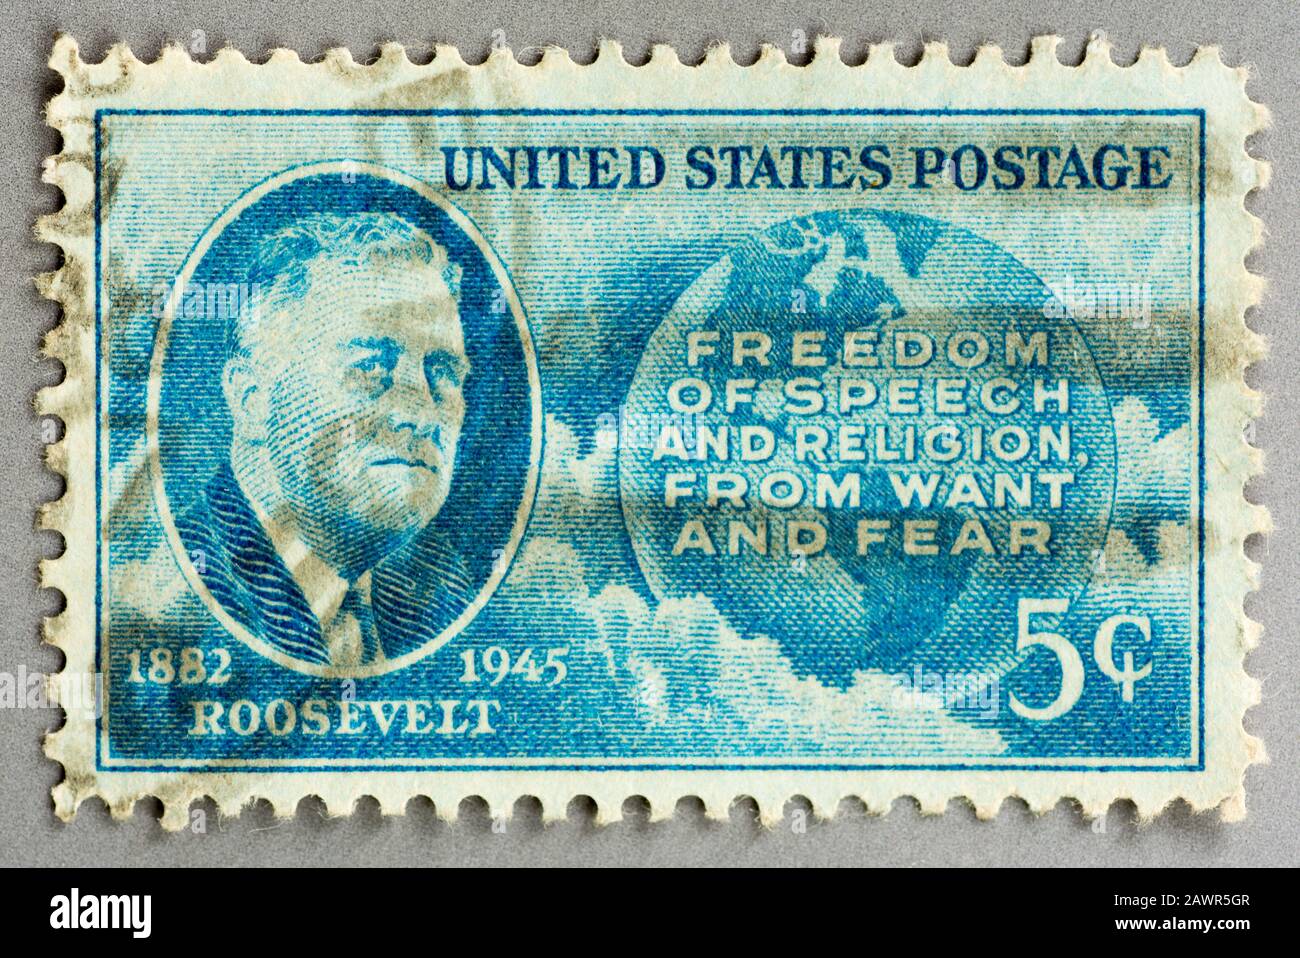 Eine US-Briefmarke, die an Präsident Franklin D Roosevelt 1882-1945 mit seinem Vierköpfige Freedomen-Zitat erinnert. Stockfoto